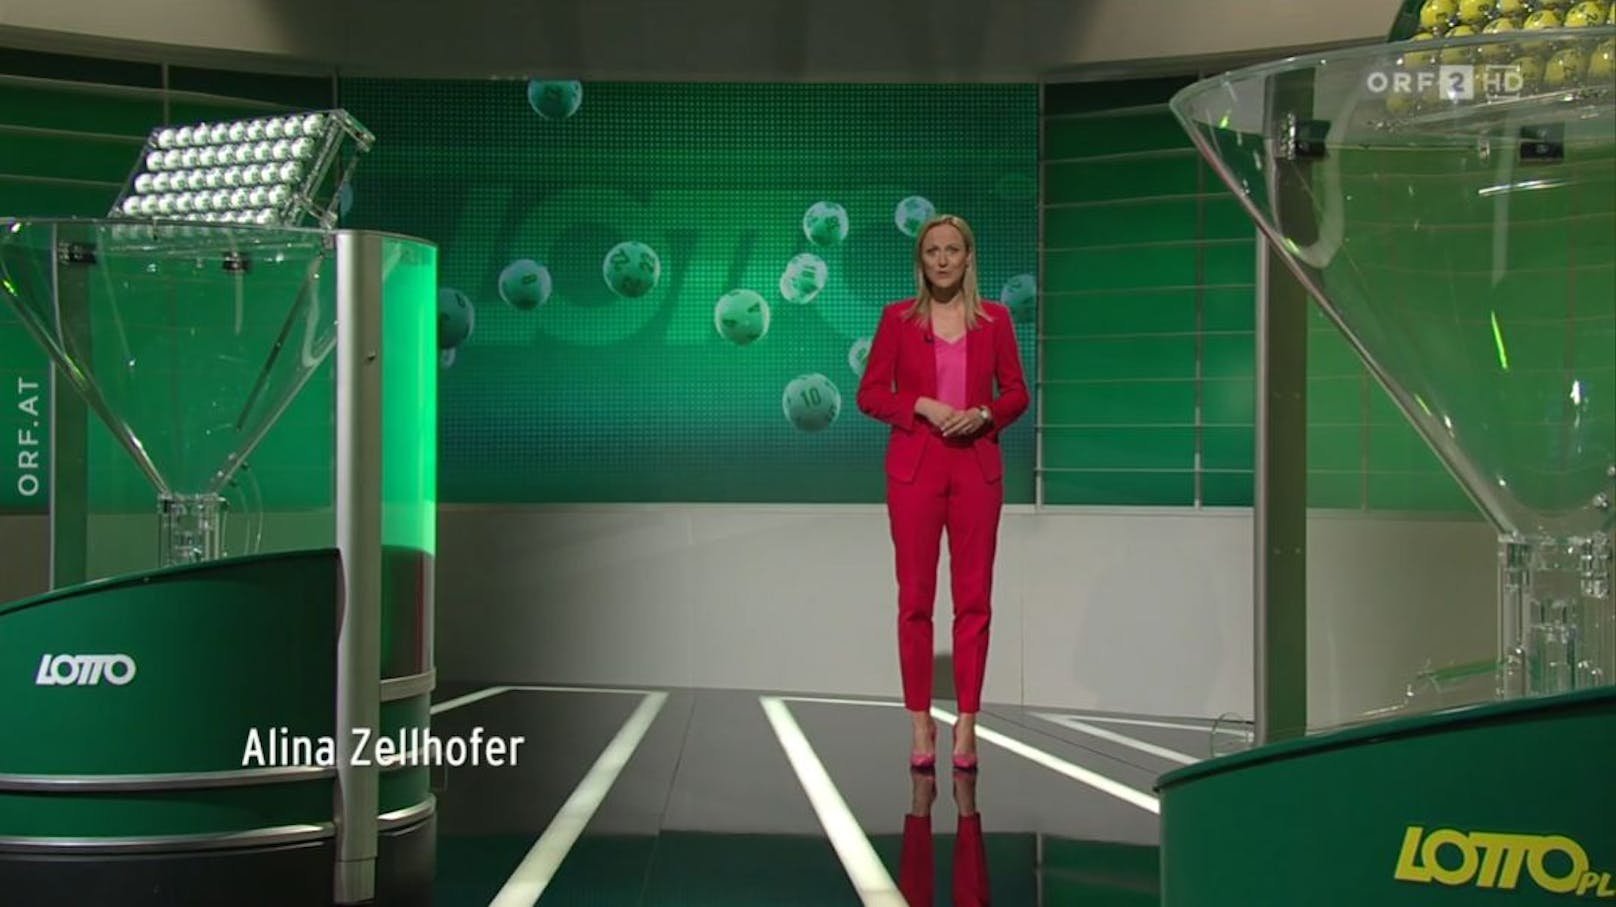 ORF-Sportmoderatorin <a data-li-document-ref="46101038" href="https://www.heute.at/s/alina-zellhofer-erste-frau-bei-sport-am-sonntag-orf-rainer-pariasek-46101038">Alina Zellhofer</a> am 11. August 2023 in ungewohnter Rolle als Lotto-Fee: "Denn Kugeln sind ja mein Metier."